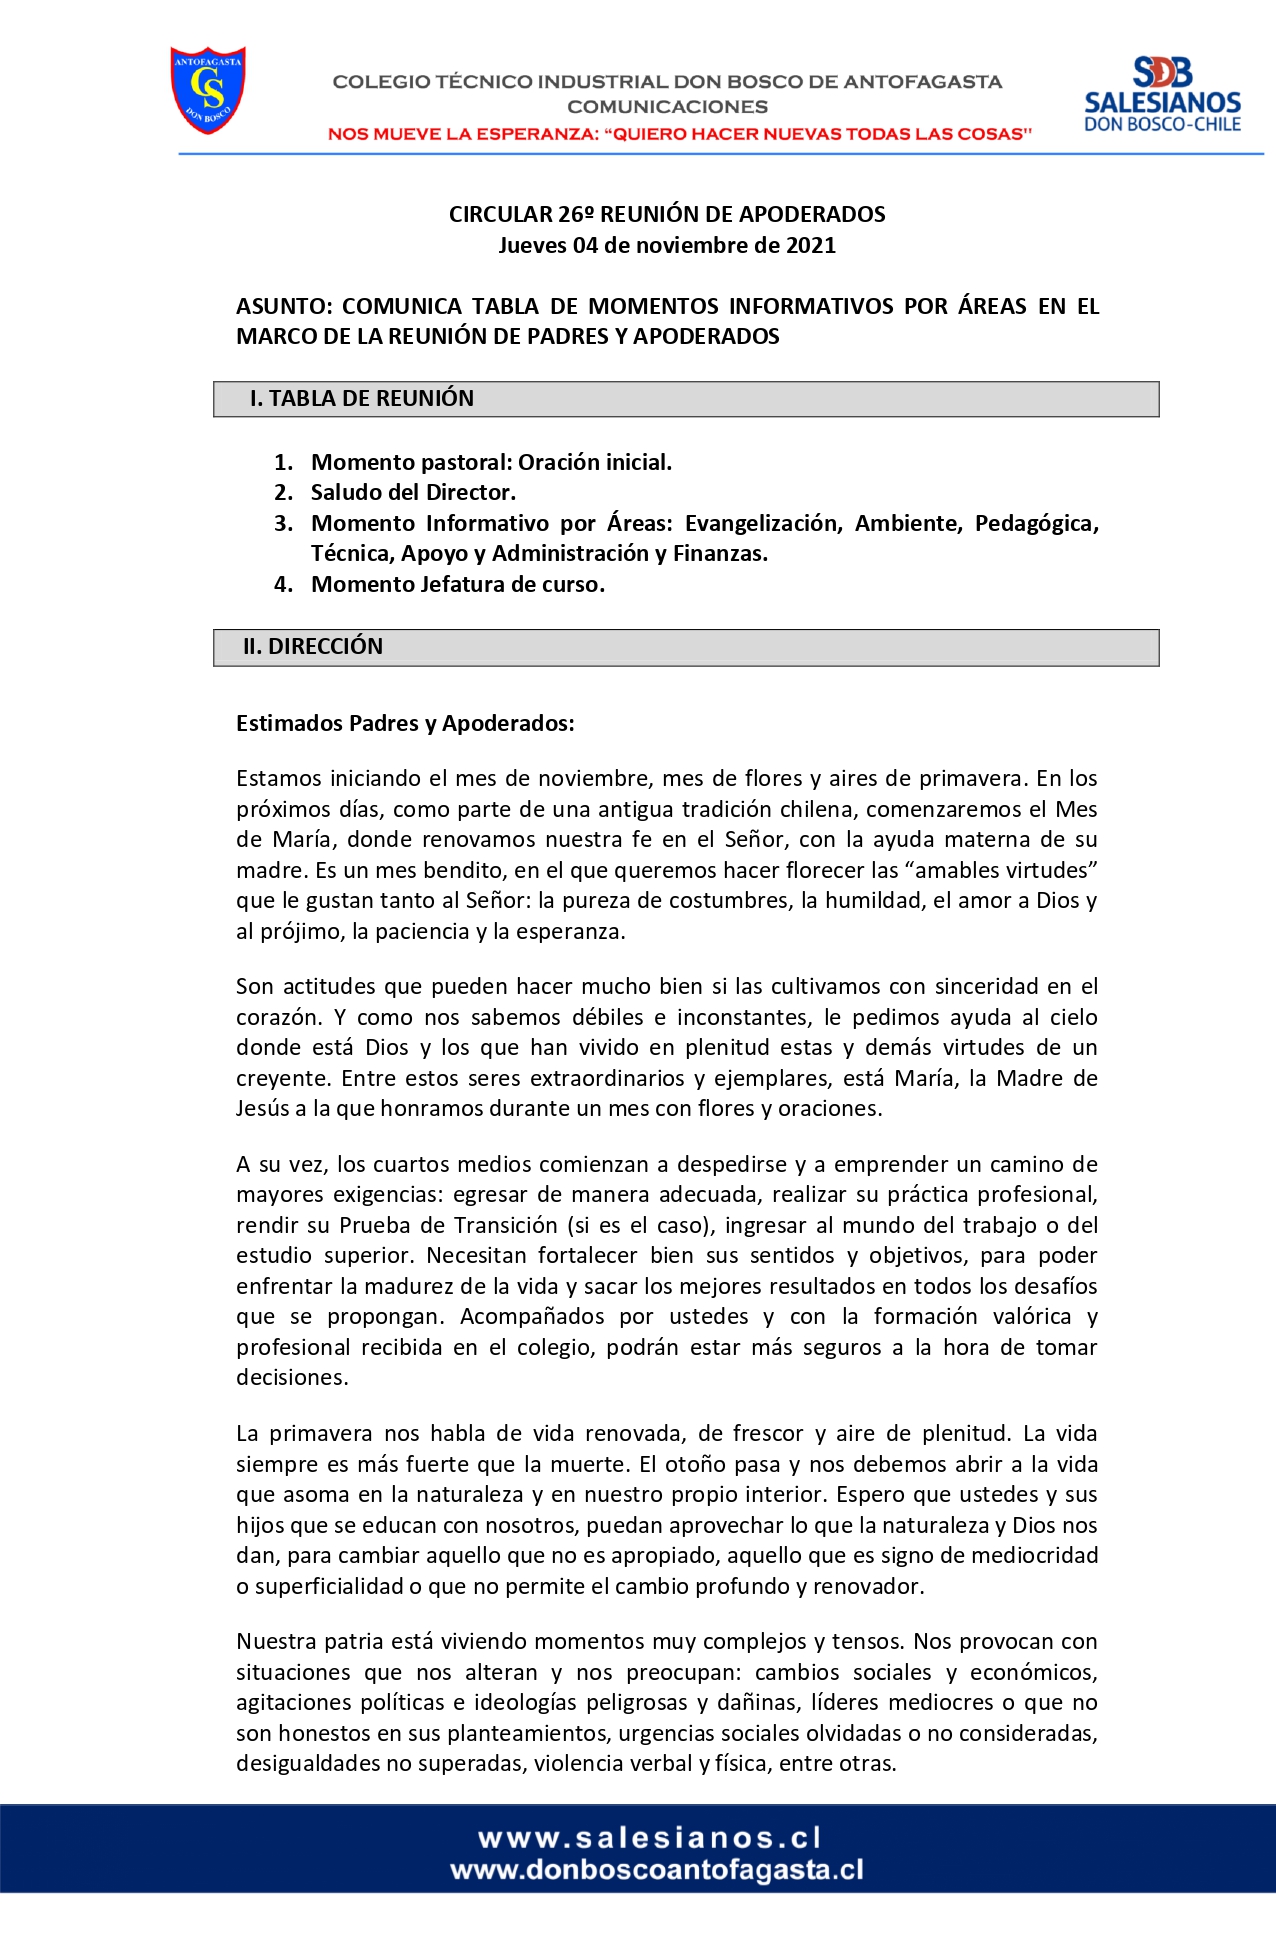 CIRCULAR Nº26 INFORMA REUNIÓN DE PADRES Y APODERADOS JUEVES 04 DE NOVIEMBRE DE 2021 page 0001